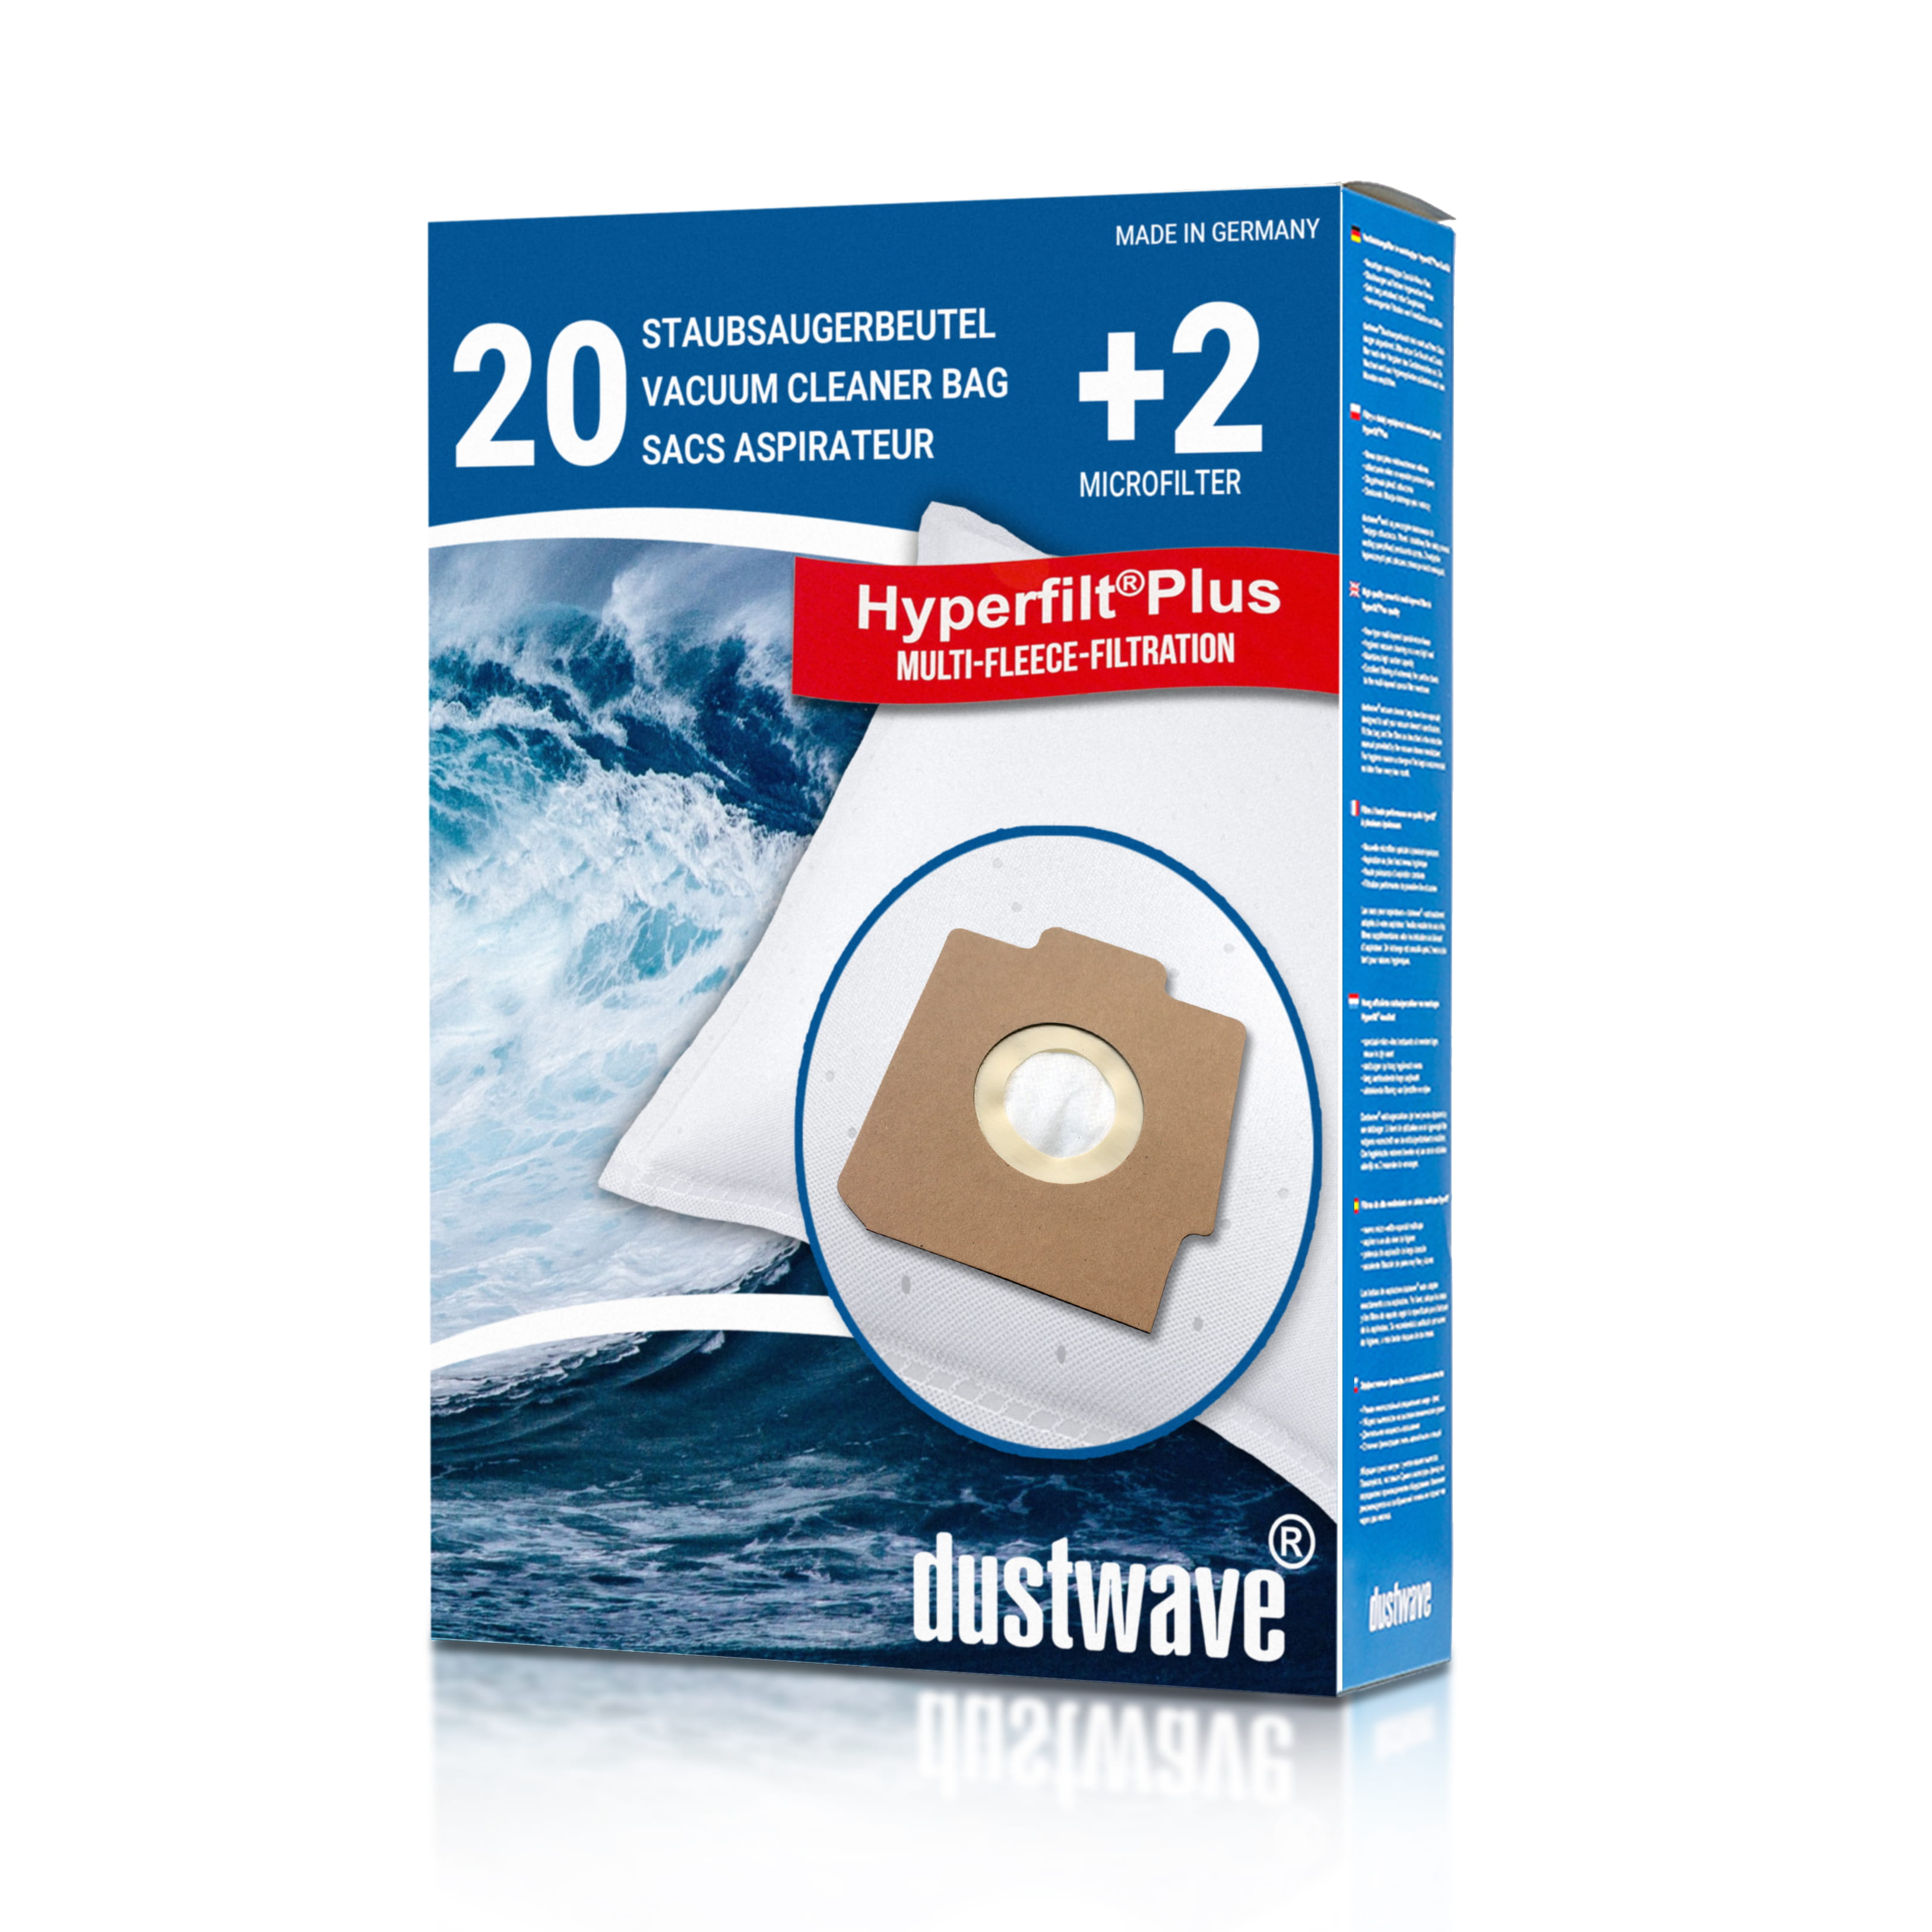 Dustwave® 20 Staubsaugerbeutel für Hoover S3130 / TRS3130 - hocheffizient, mehrlagiges Mikrovlies mit Hygieneverschluss - Made in Germany